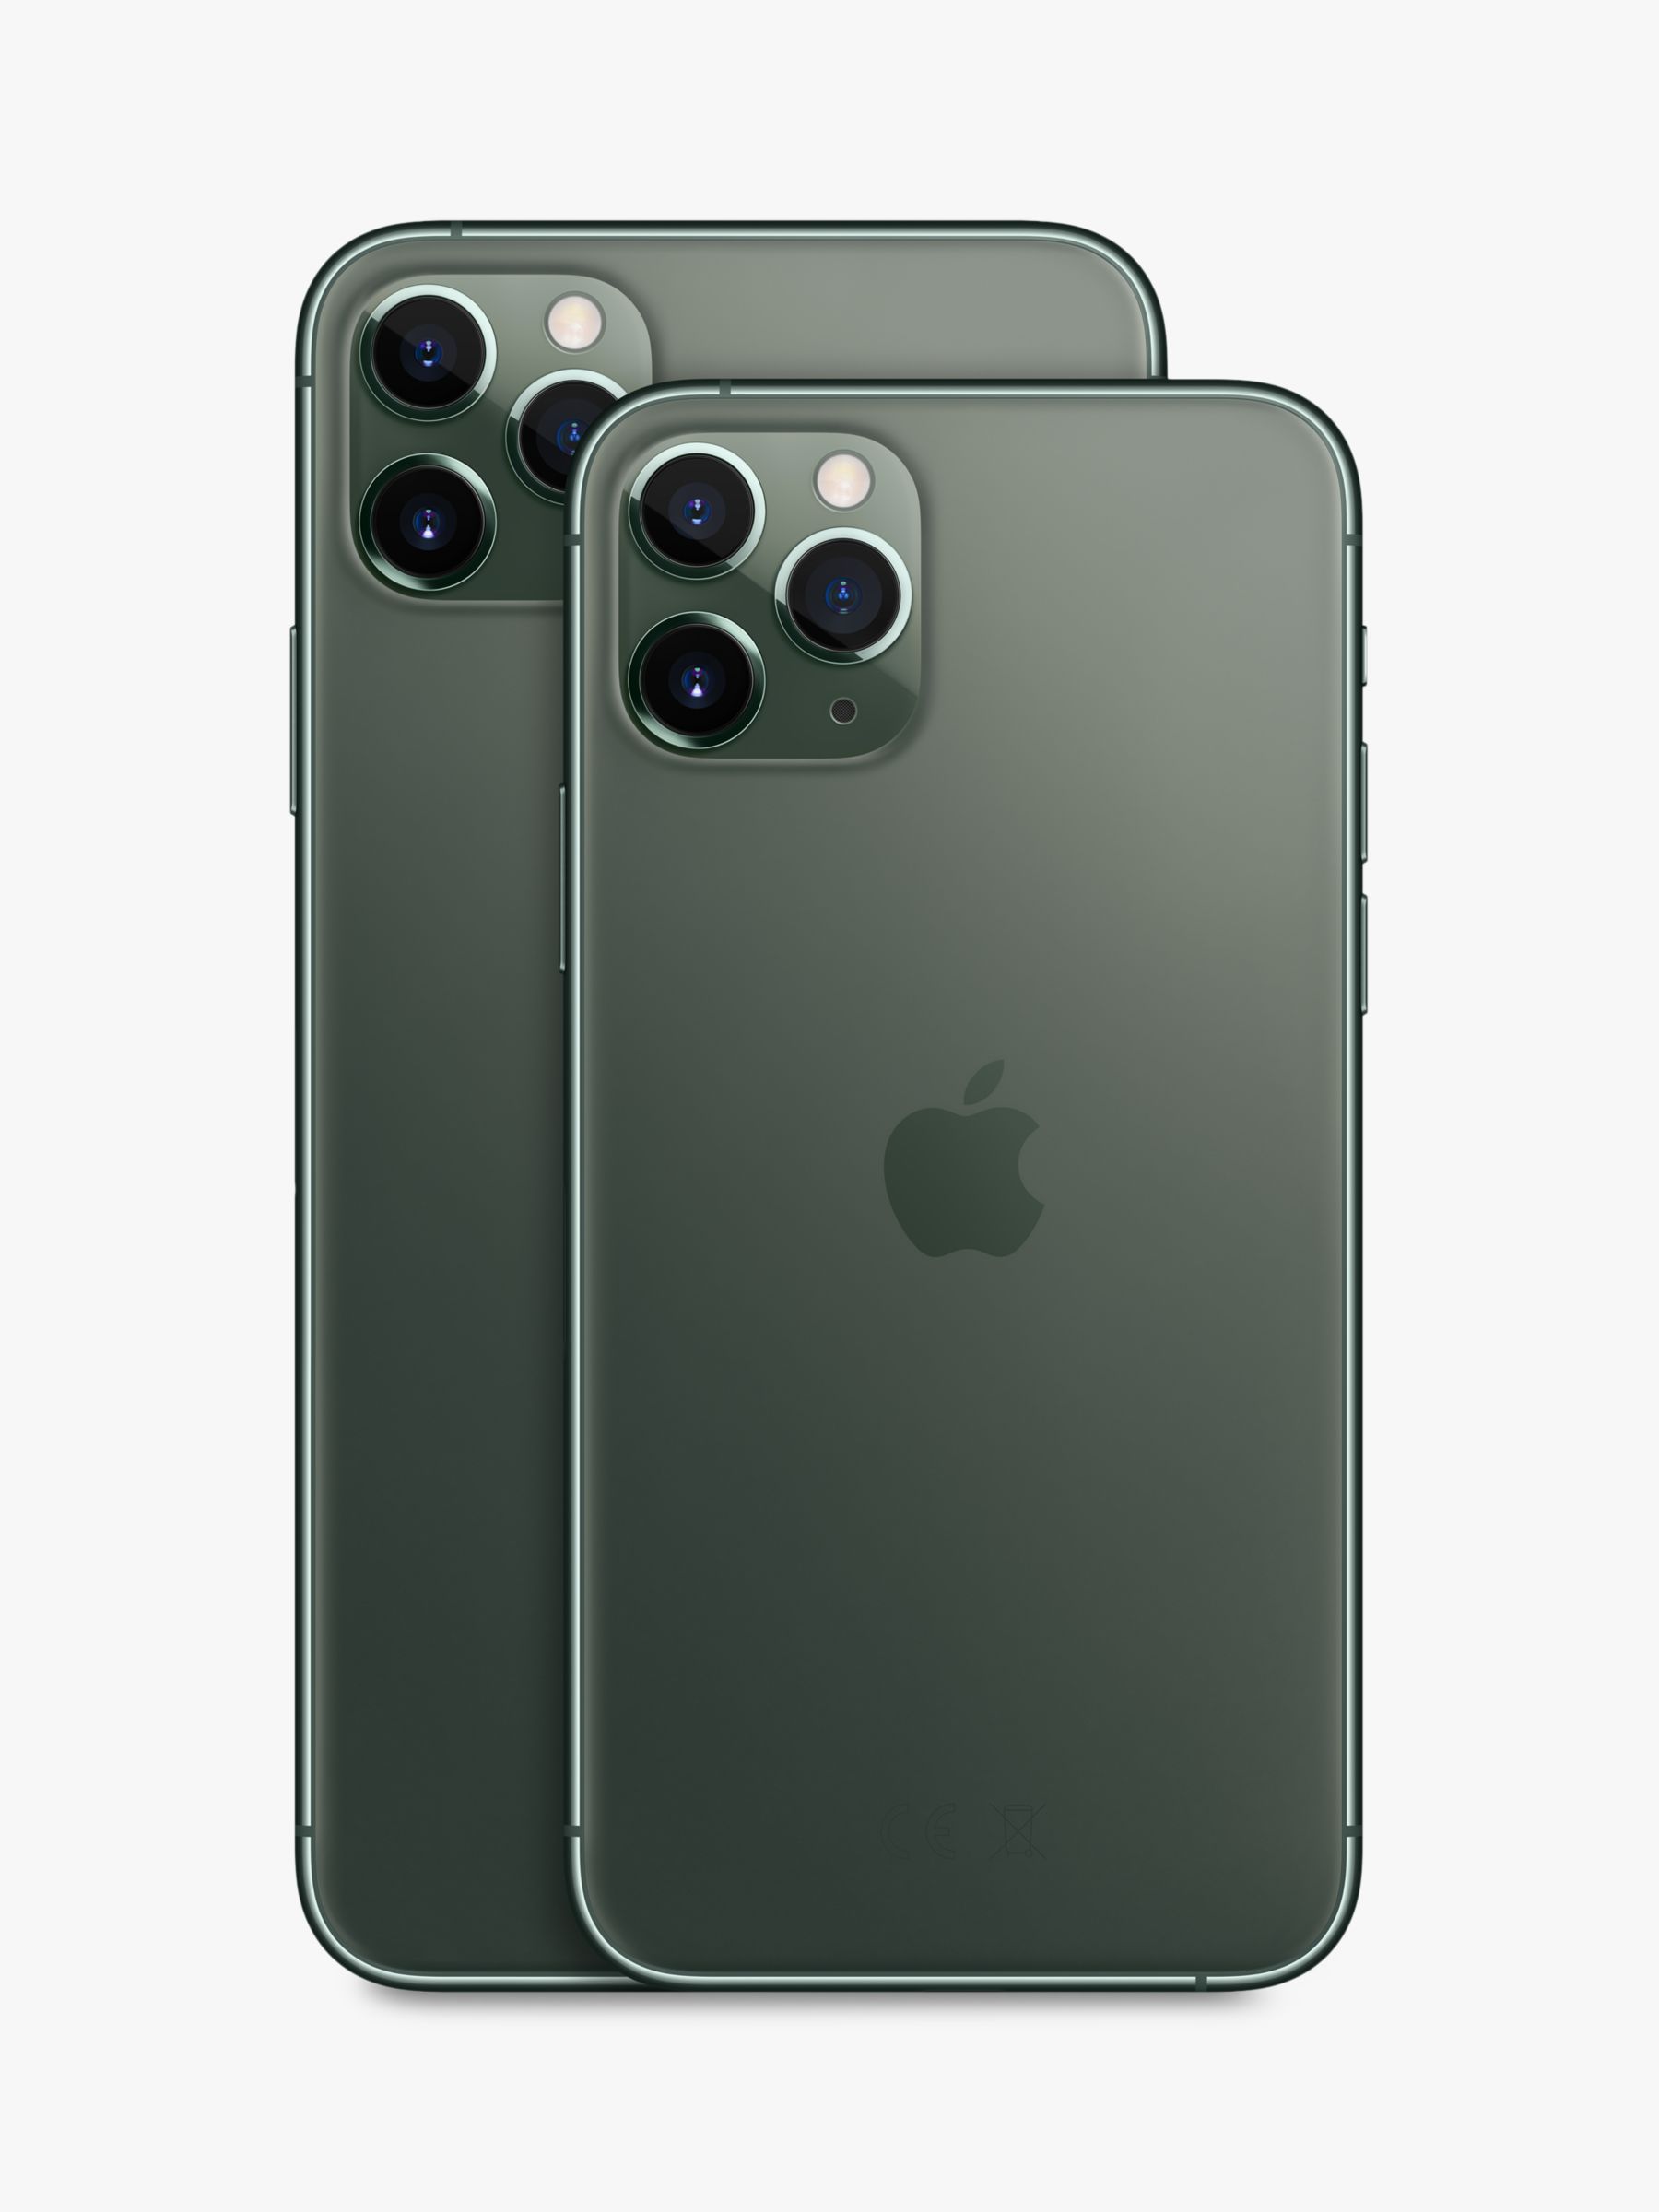 Apple Iphone 11 Pro Max Ios 6 5 4g Lte Sim Free 64gb